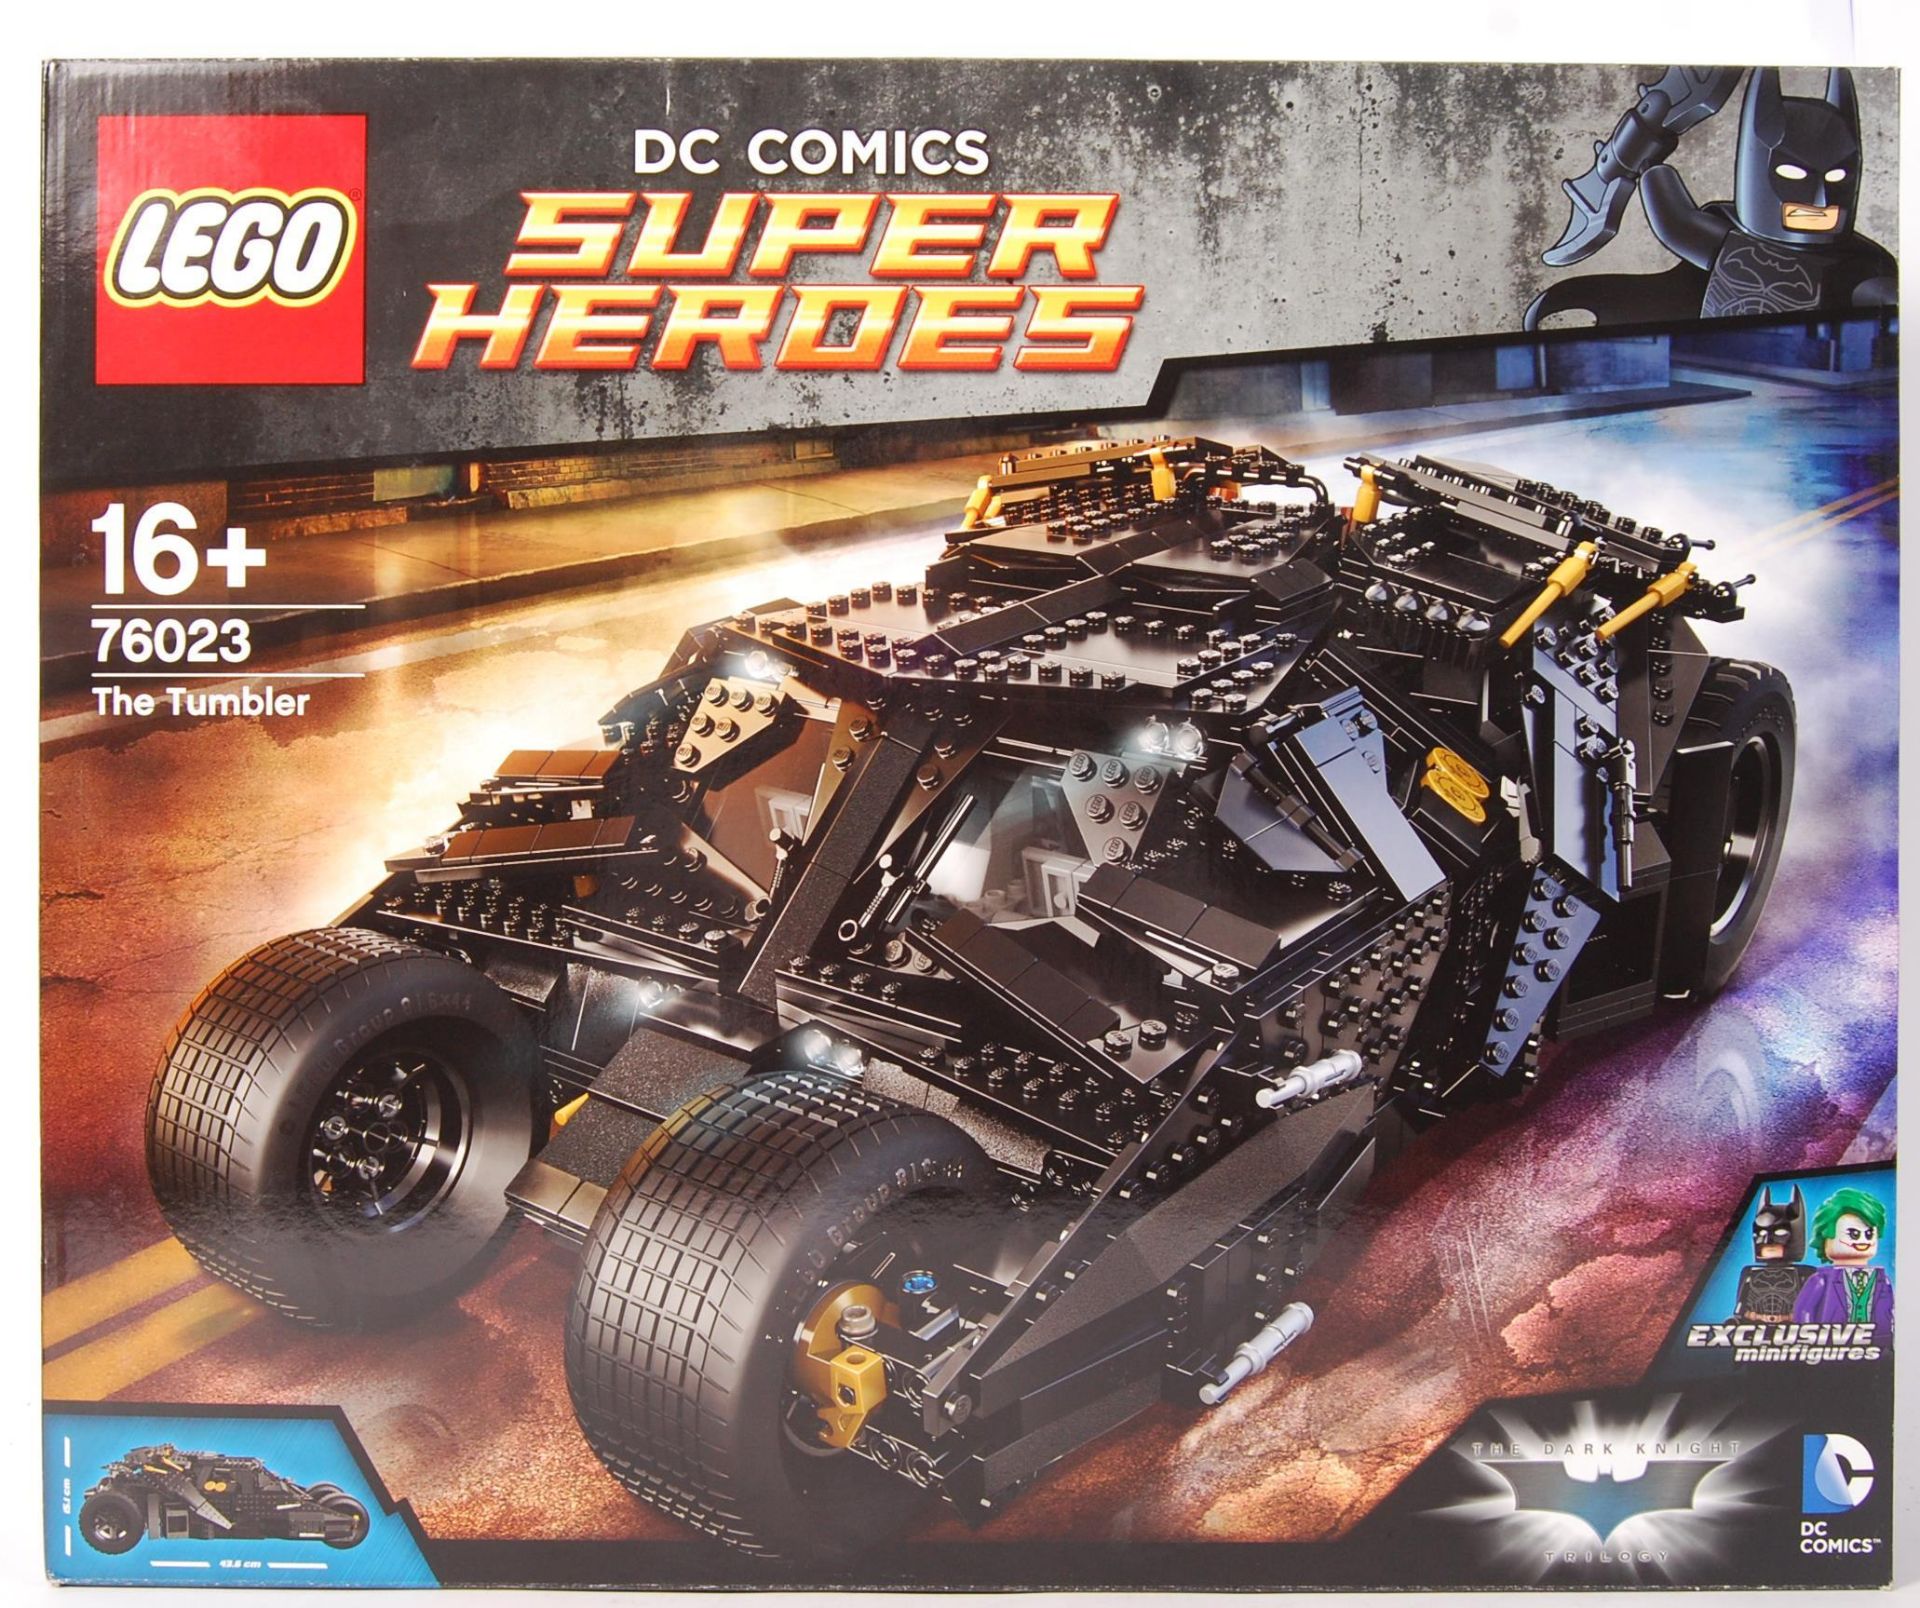 LEGO DC COMICS SUPER HEROES 76023 ' THE TUMBLER ' BOXED SET